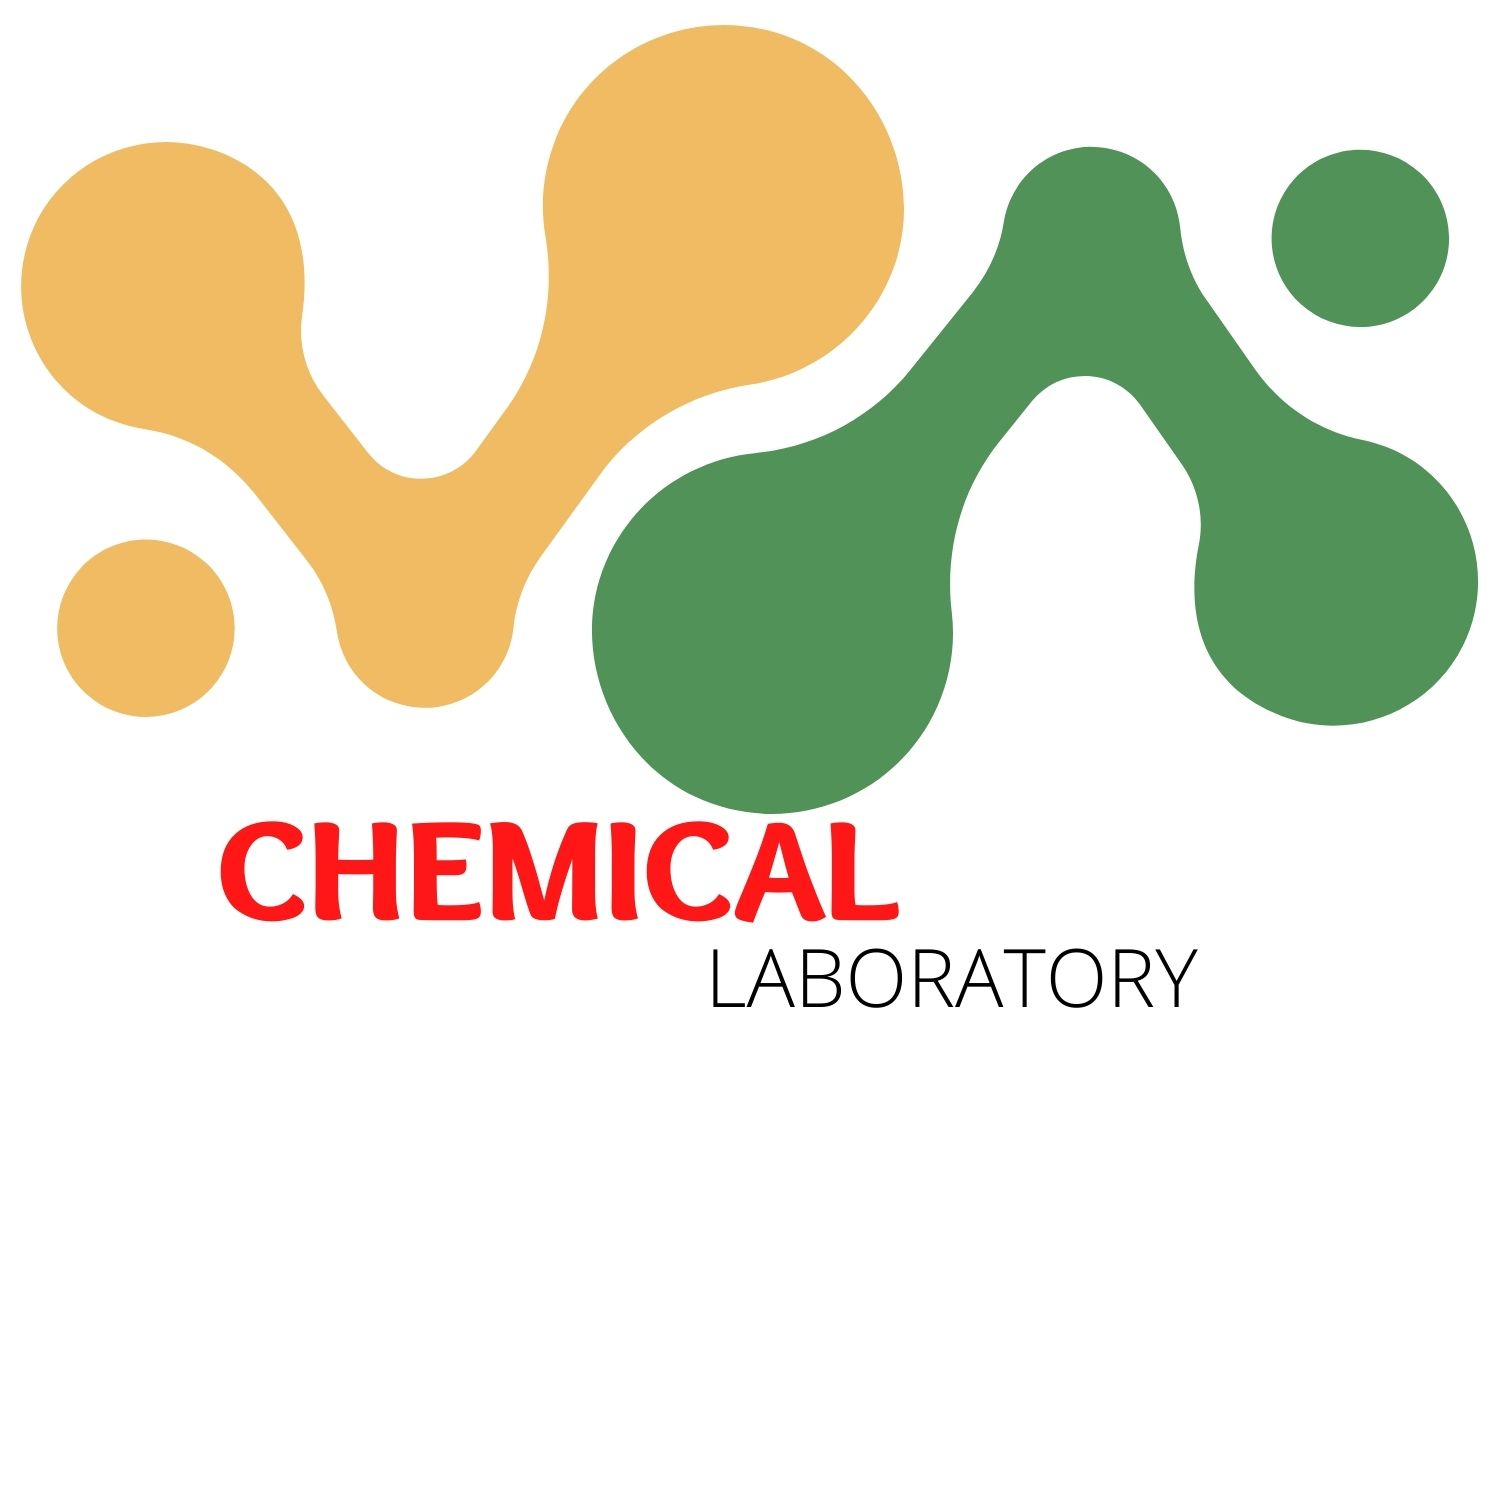 Sinh hóa Vina-Hóa chất Sigmaaldrich, Restek, hóa chất và thiết bị phòng thí nghiệm